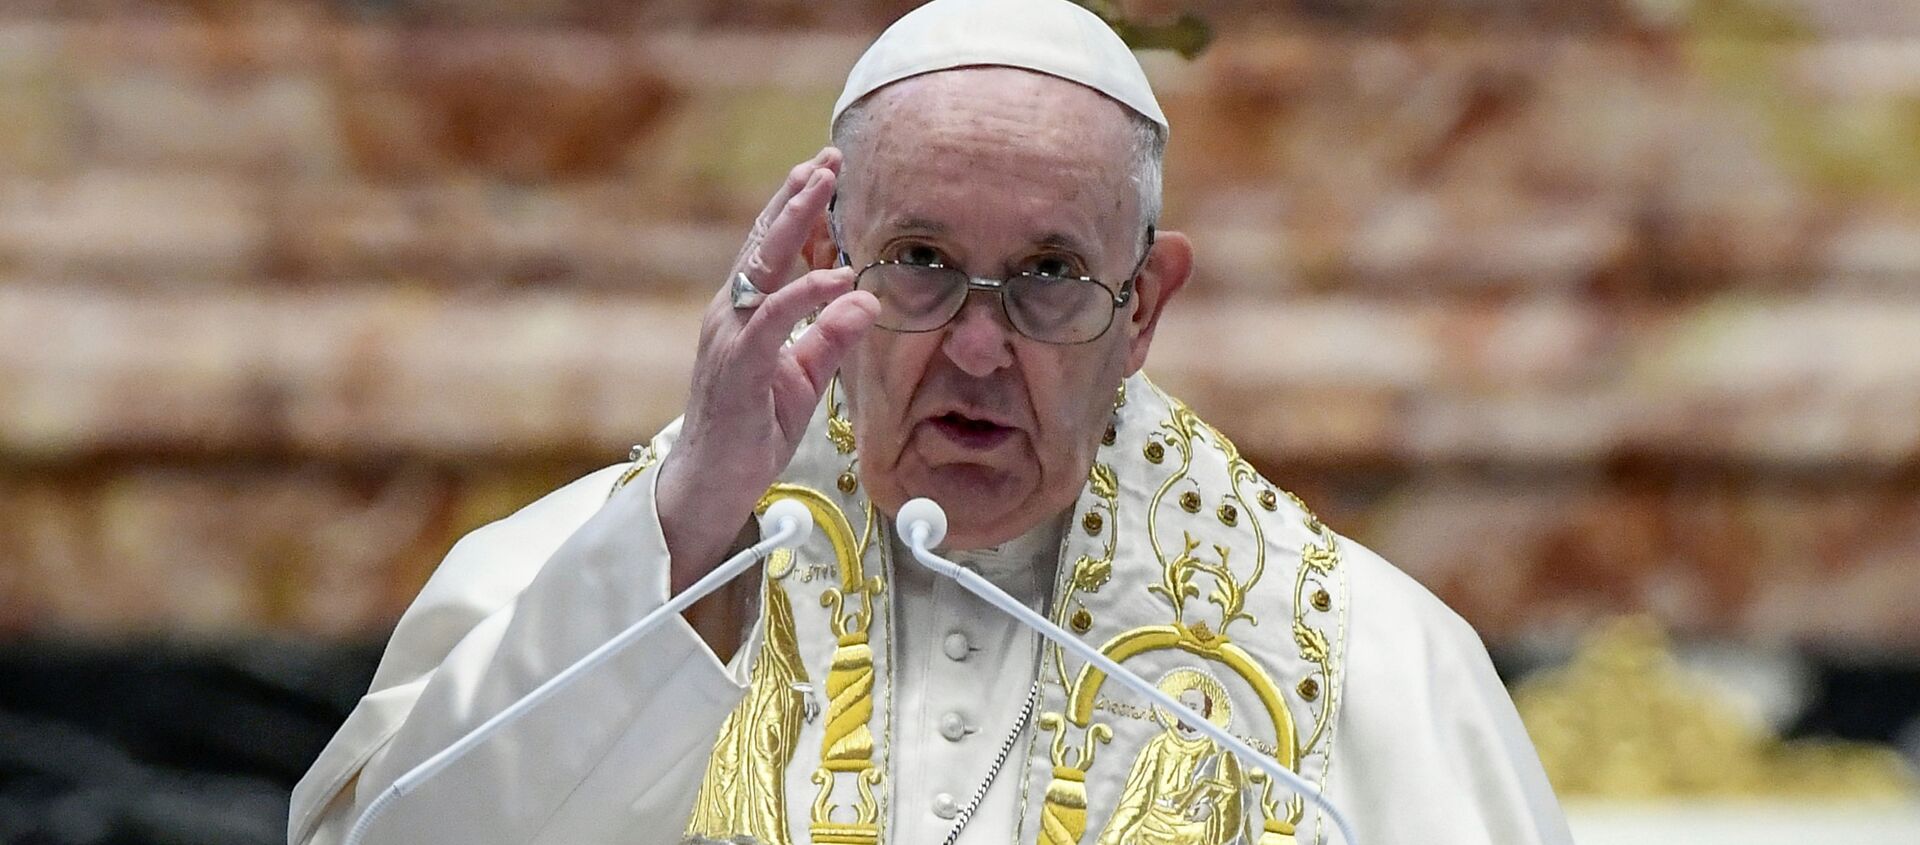 Đức Giáo hoàng Francis cử hành Thánh lễ Phục sinh tại Vatican. - Sputnik Việt Nam, 1920, 23.08.2021